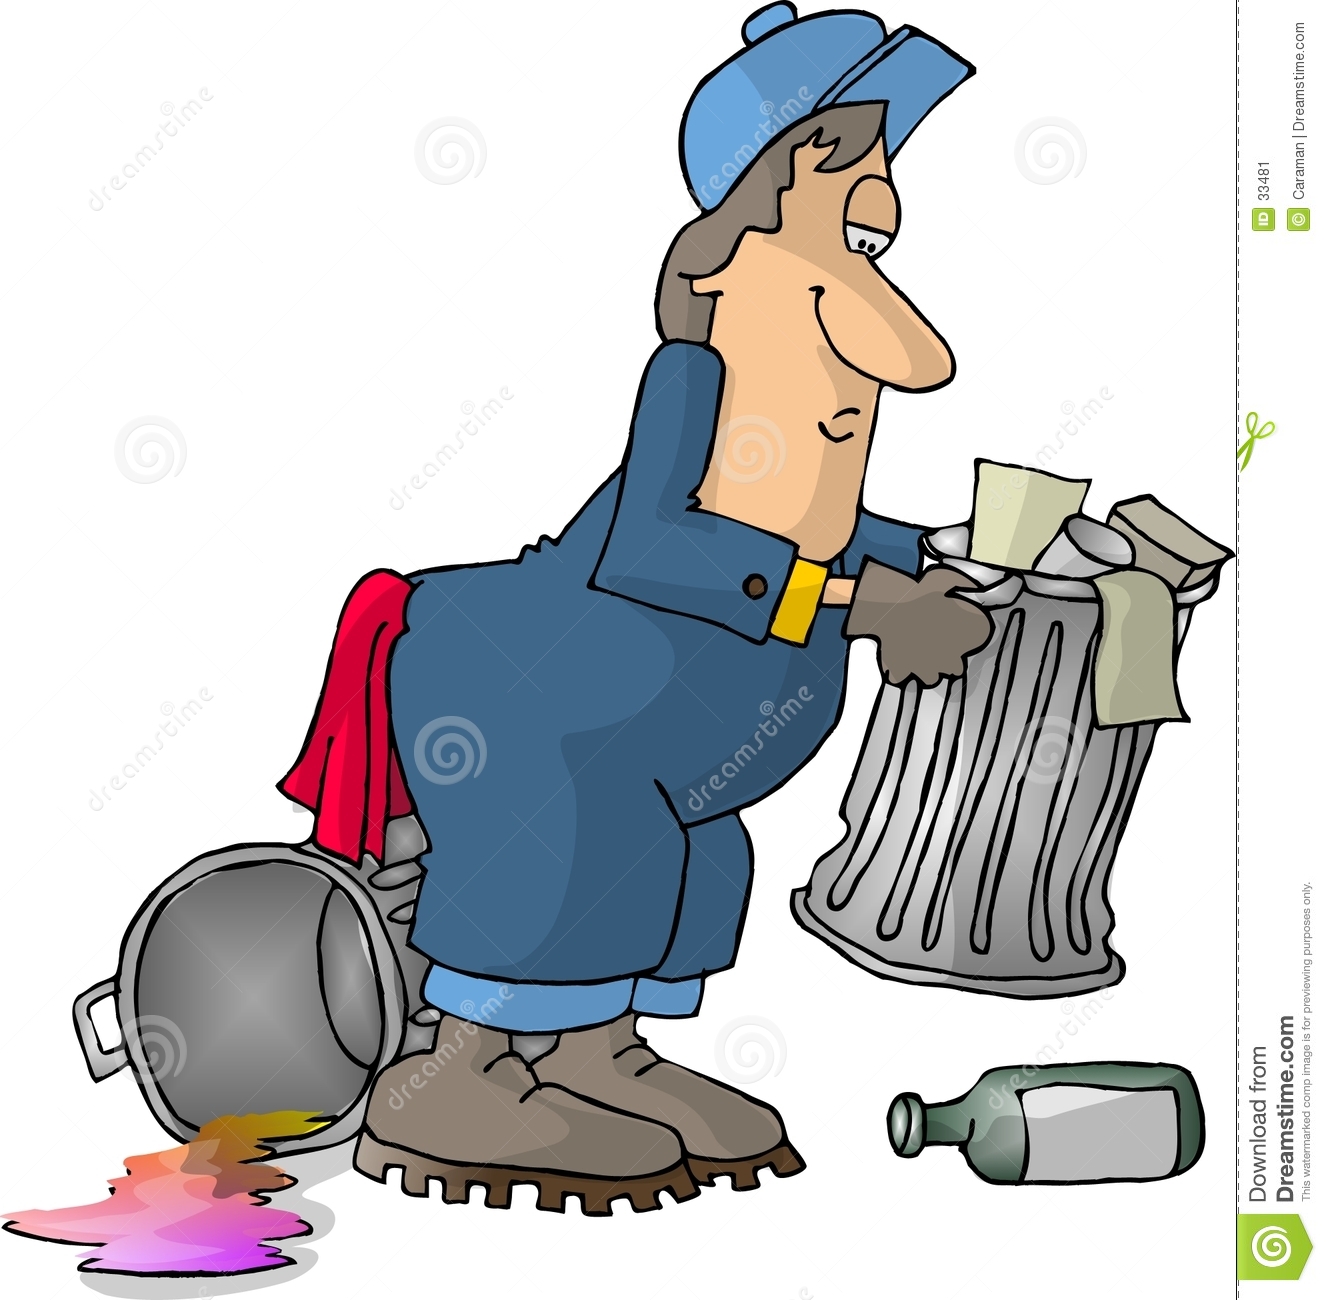 Garbage Man Stock Image   Image  33481